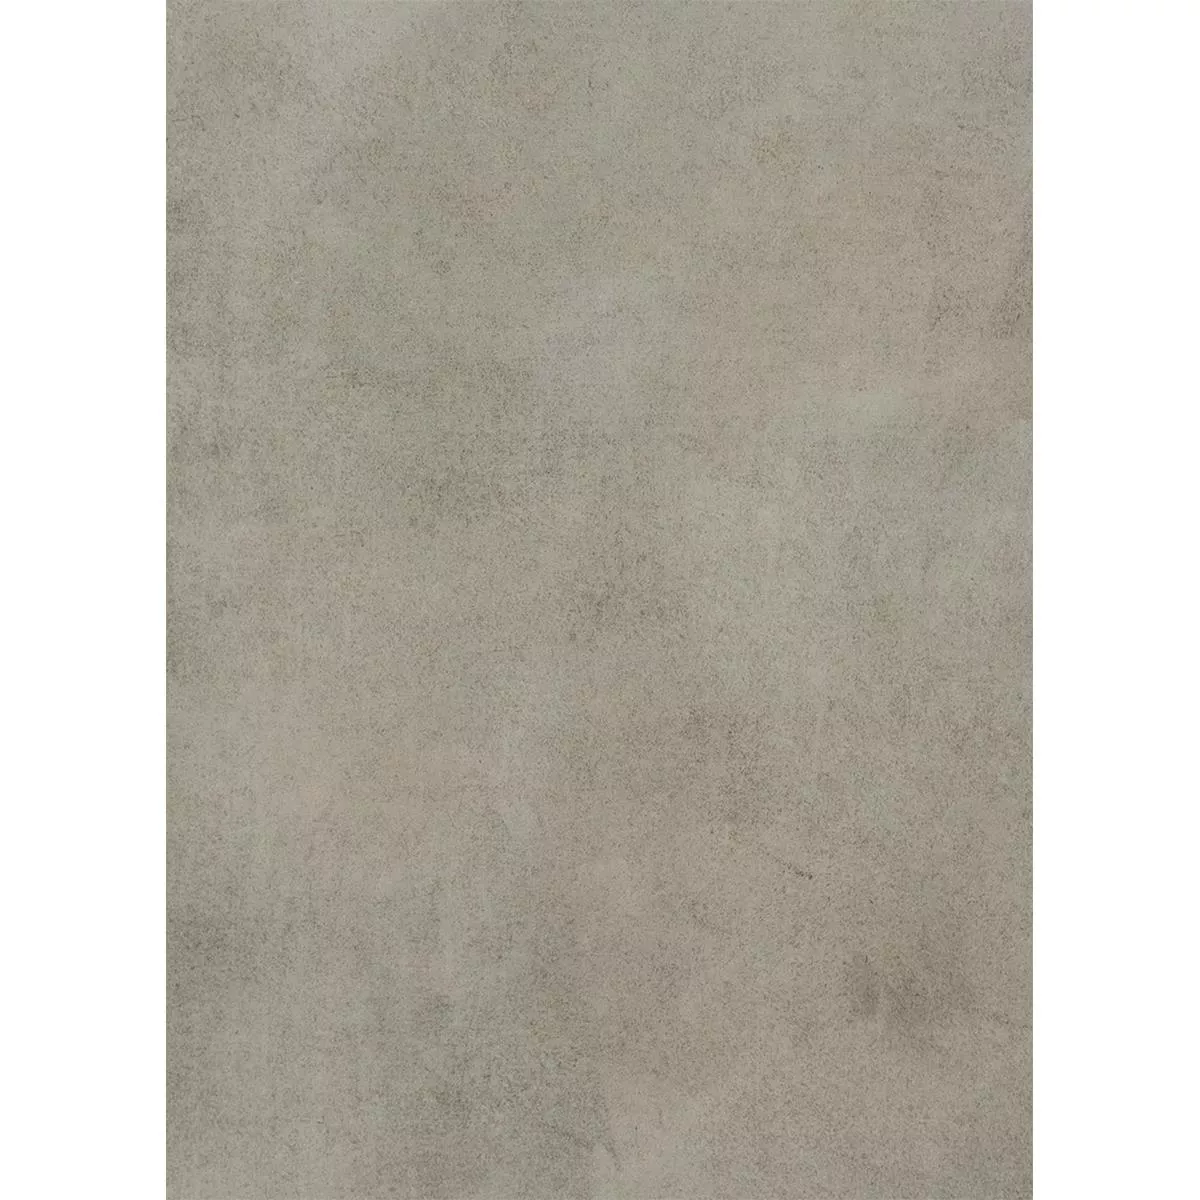 Terrassenplatten Feinsteinzeug Herzford Grau 60x120x2cm